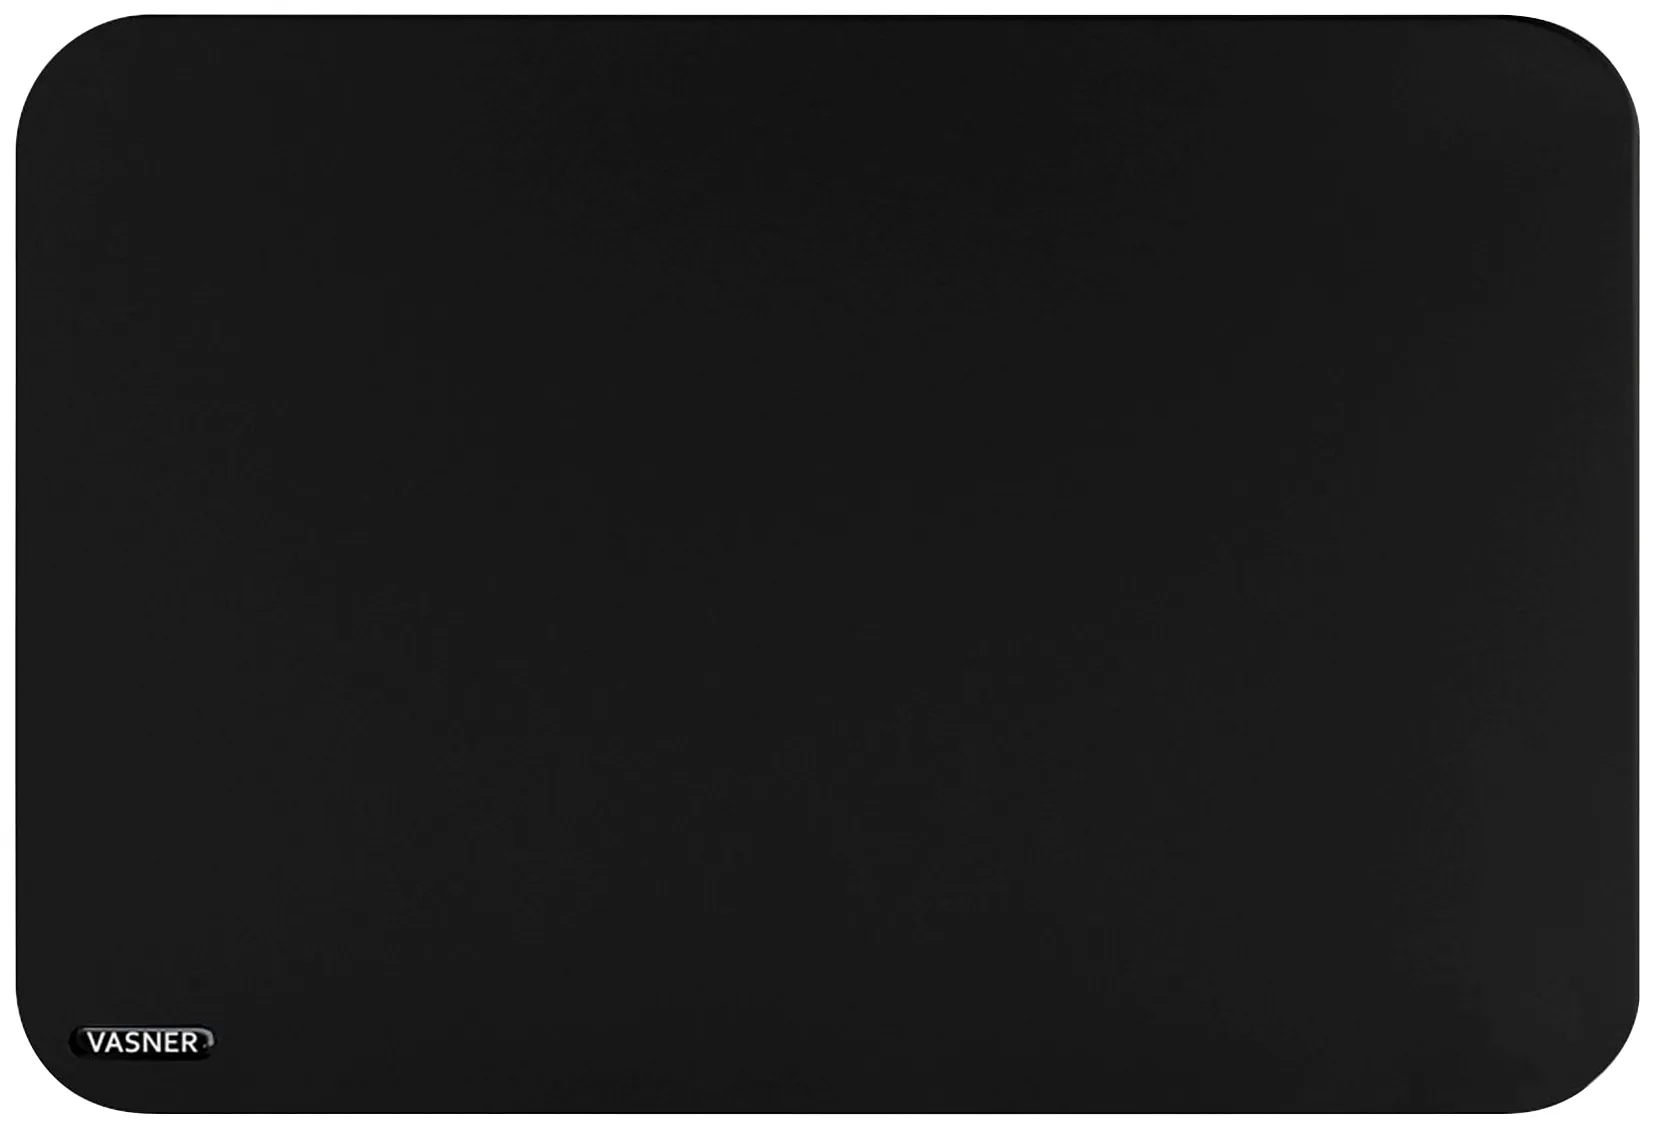 VASNER Infrarotheizung "Citara T Plus" Heizkörper Tafelheizung rund mit Kreide beschreibbar, 700 Watt Gr. B/H/T: 90 cm x 60 cm x 2,5 cm, 700 W, unten-mittig, schwarz Heizkörper